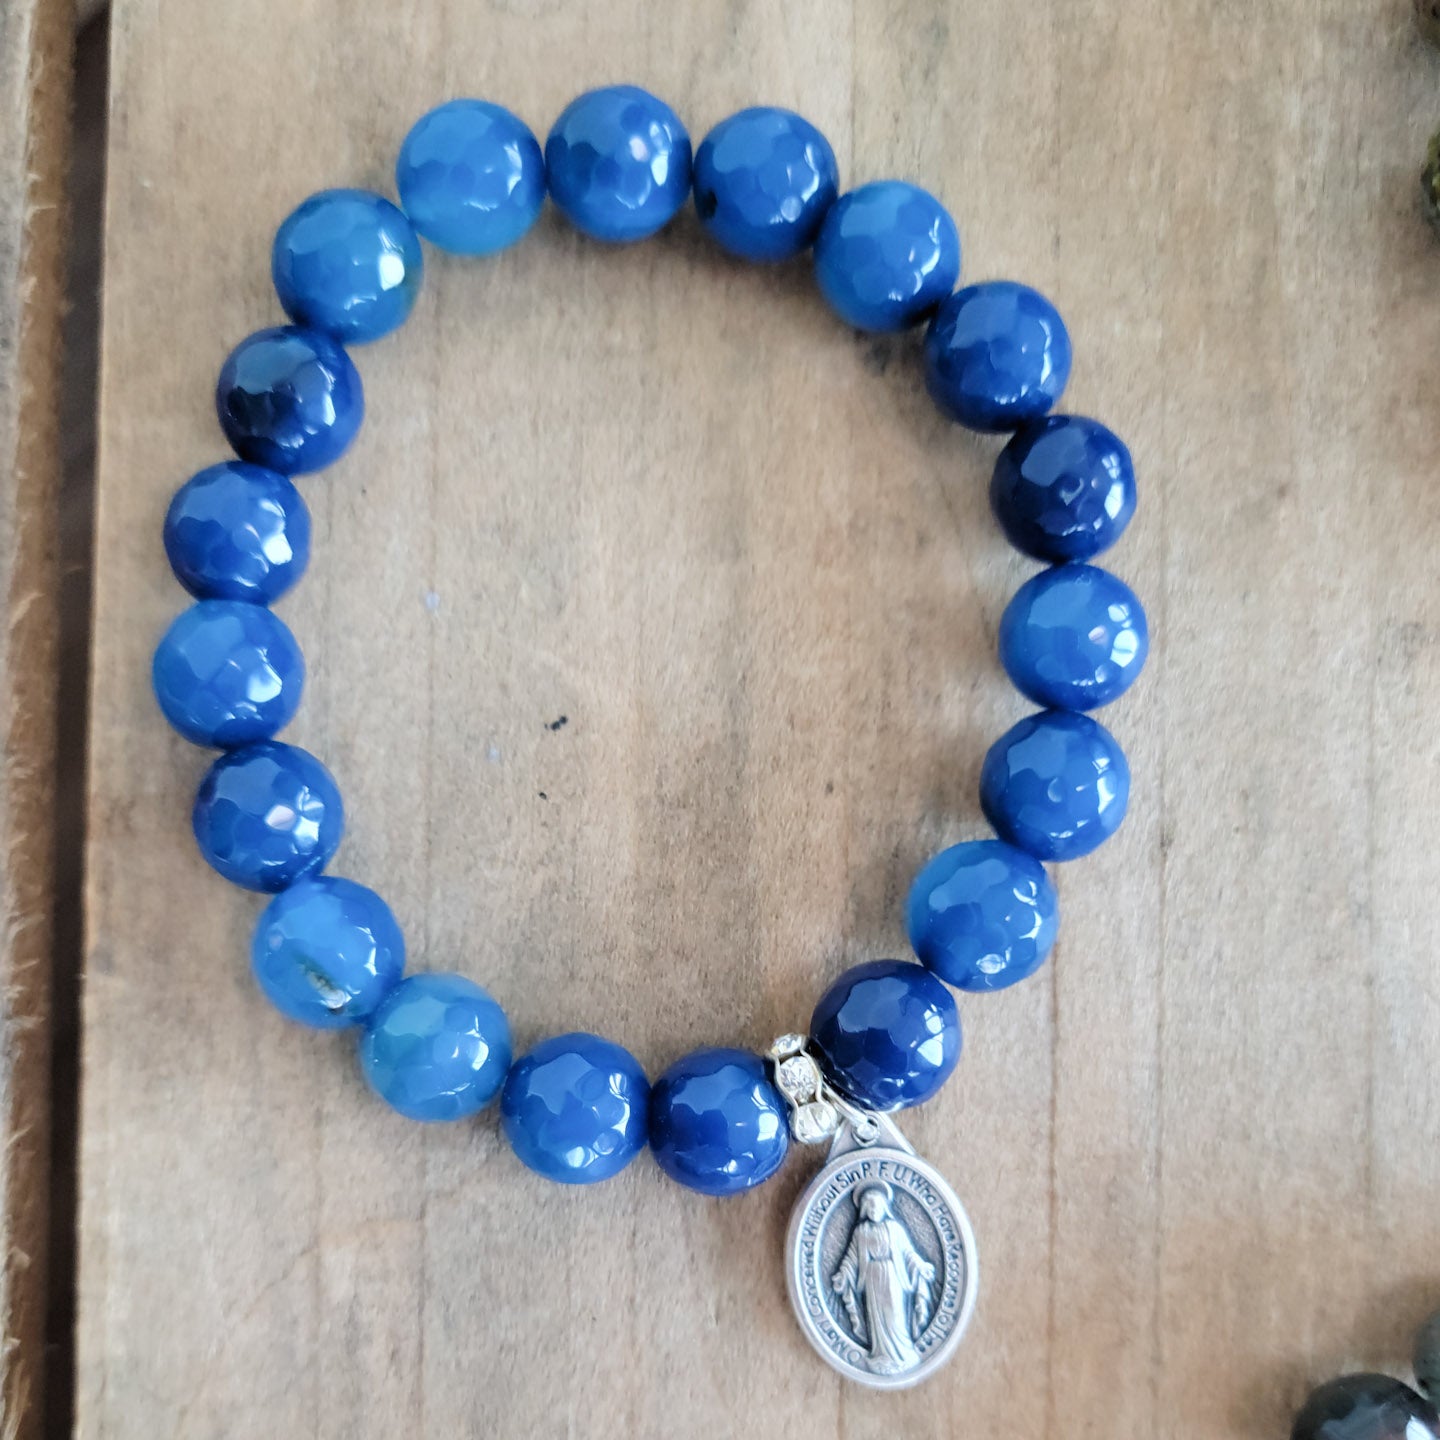 10mm cobalt blue agate gemstones Miraculous Medal stretch bracelet